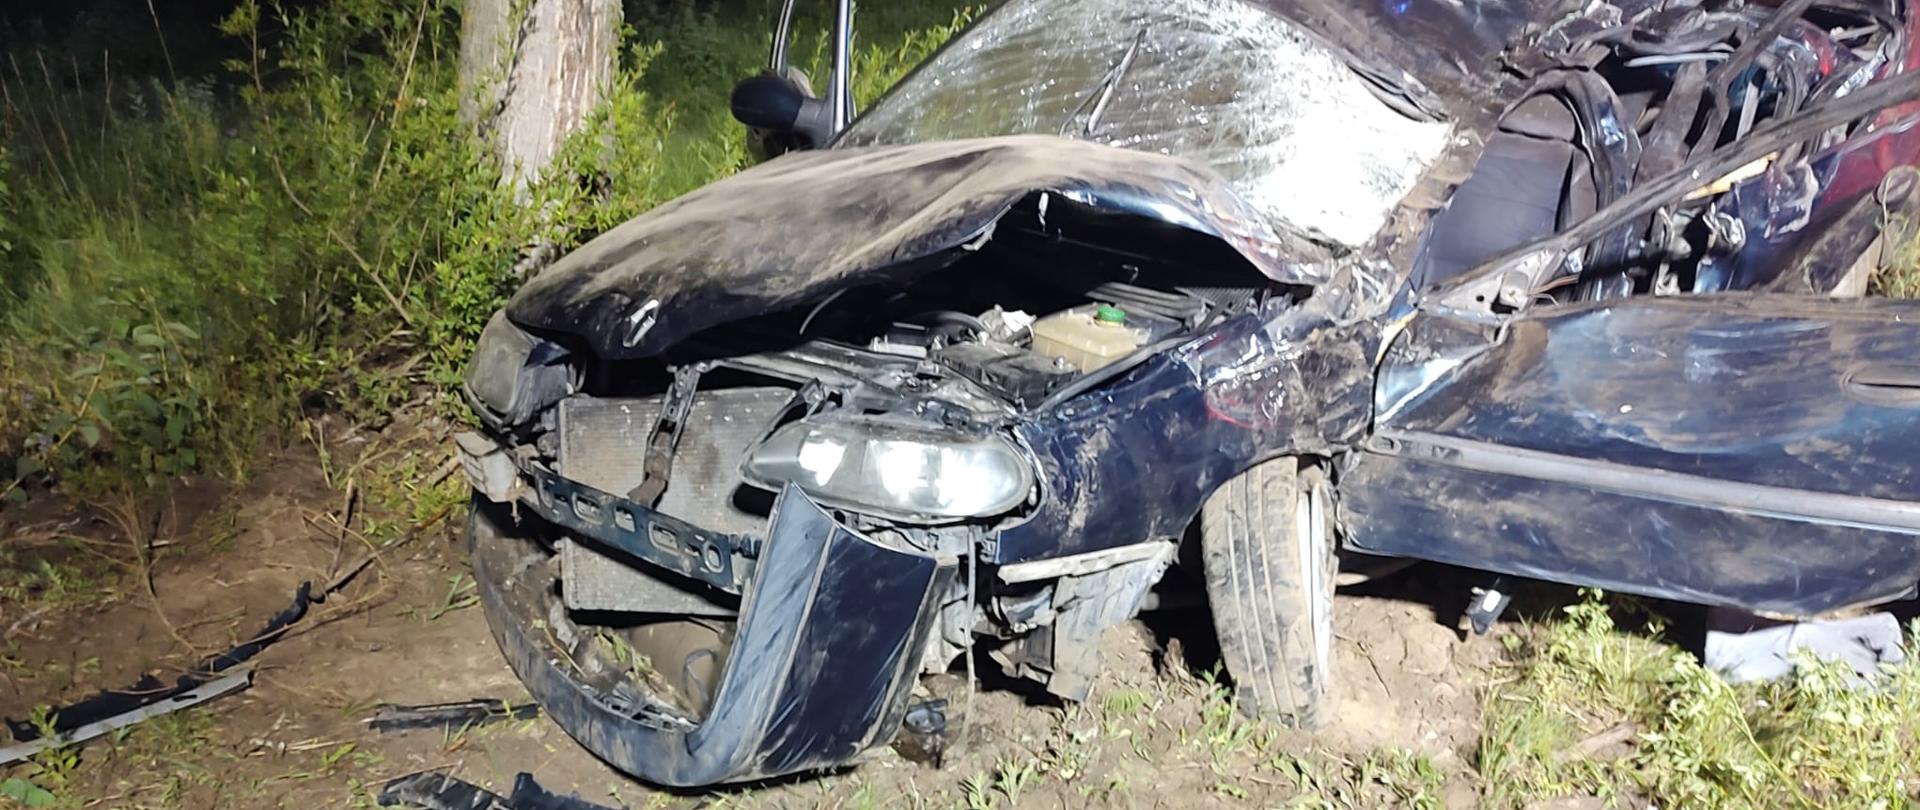 Zdjęcie przedstawia uszkodzony samochód osobowy po zdarzeniu.